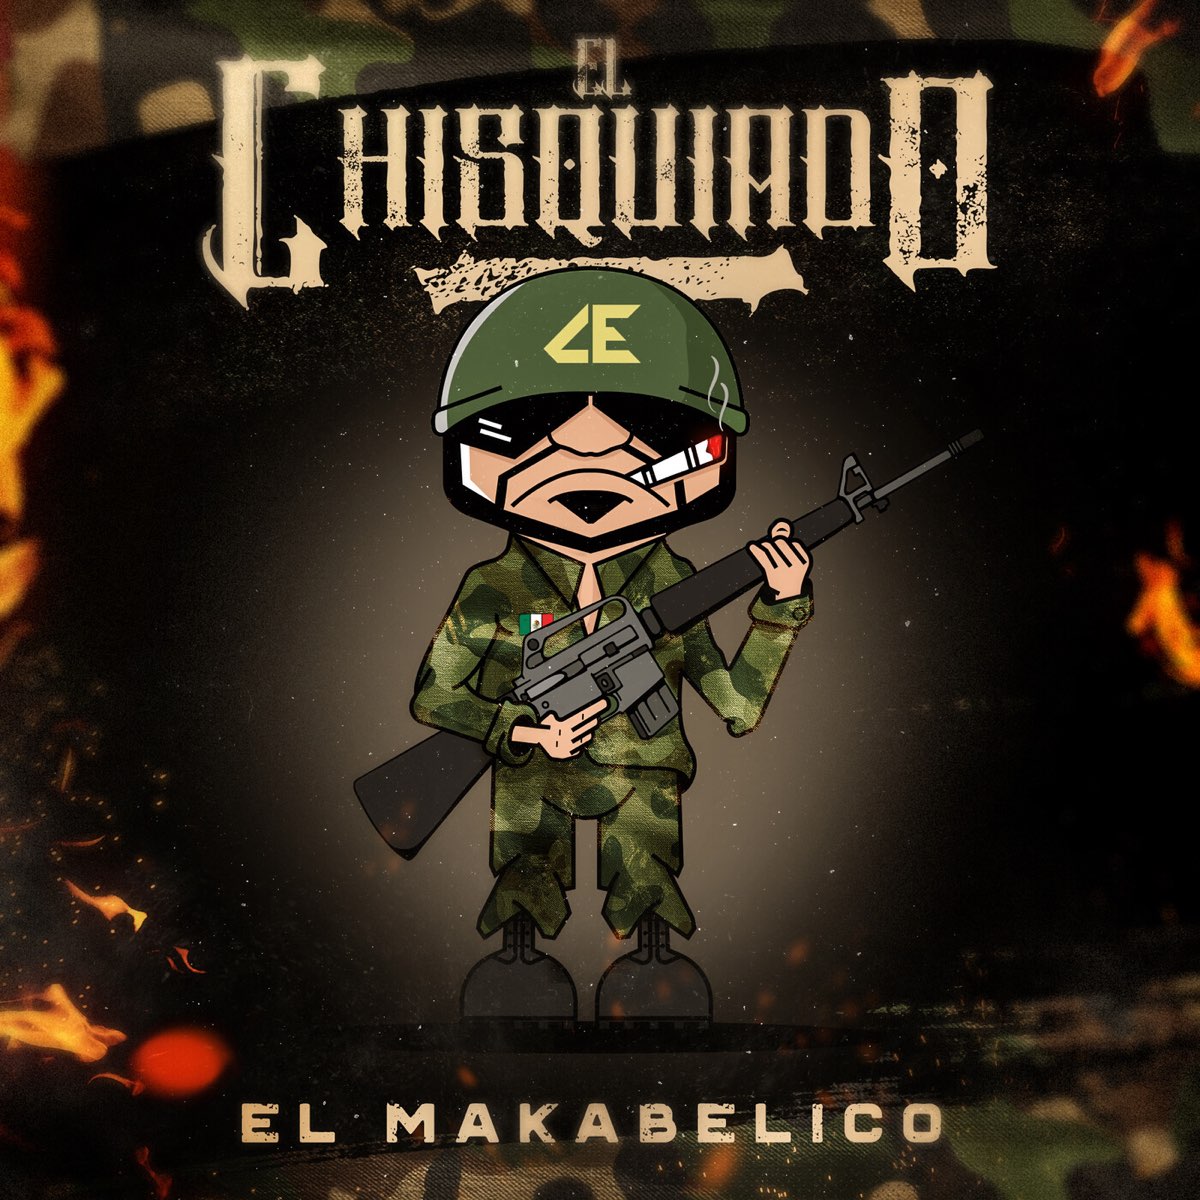 El Chisquiado - Single by El Makabelico on Apple Music